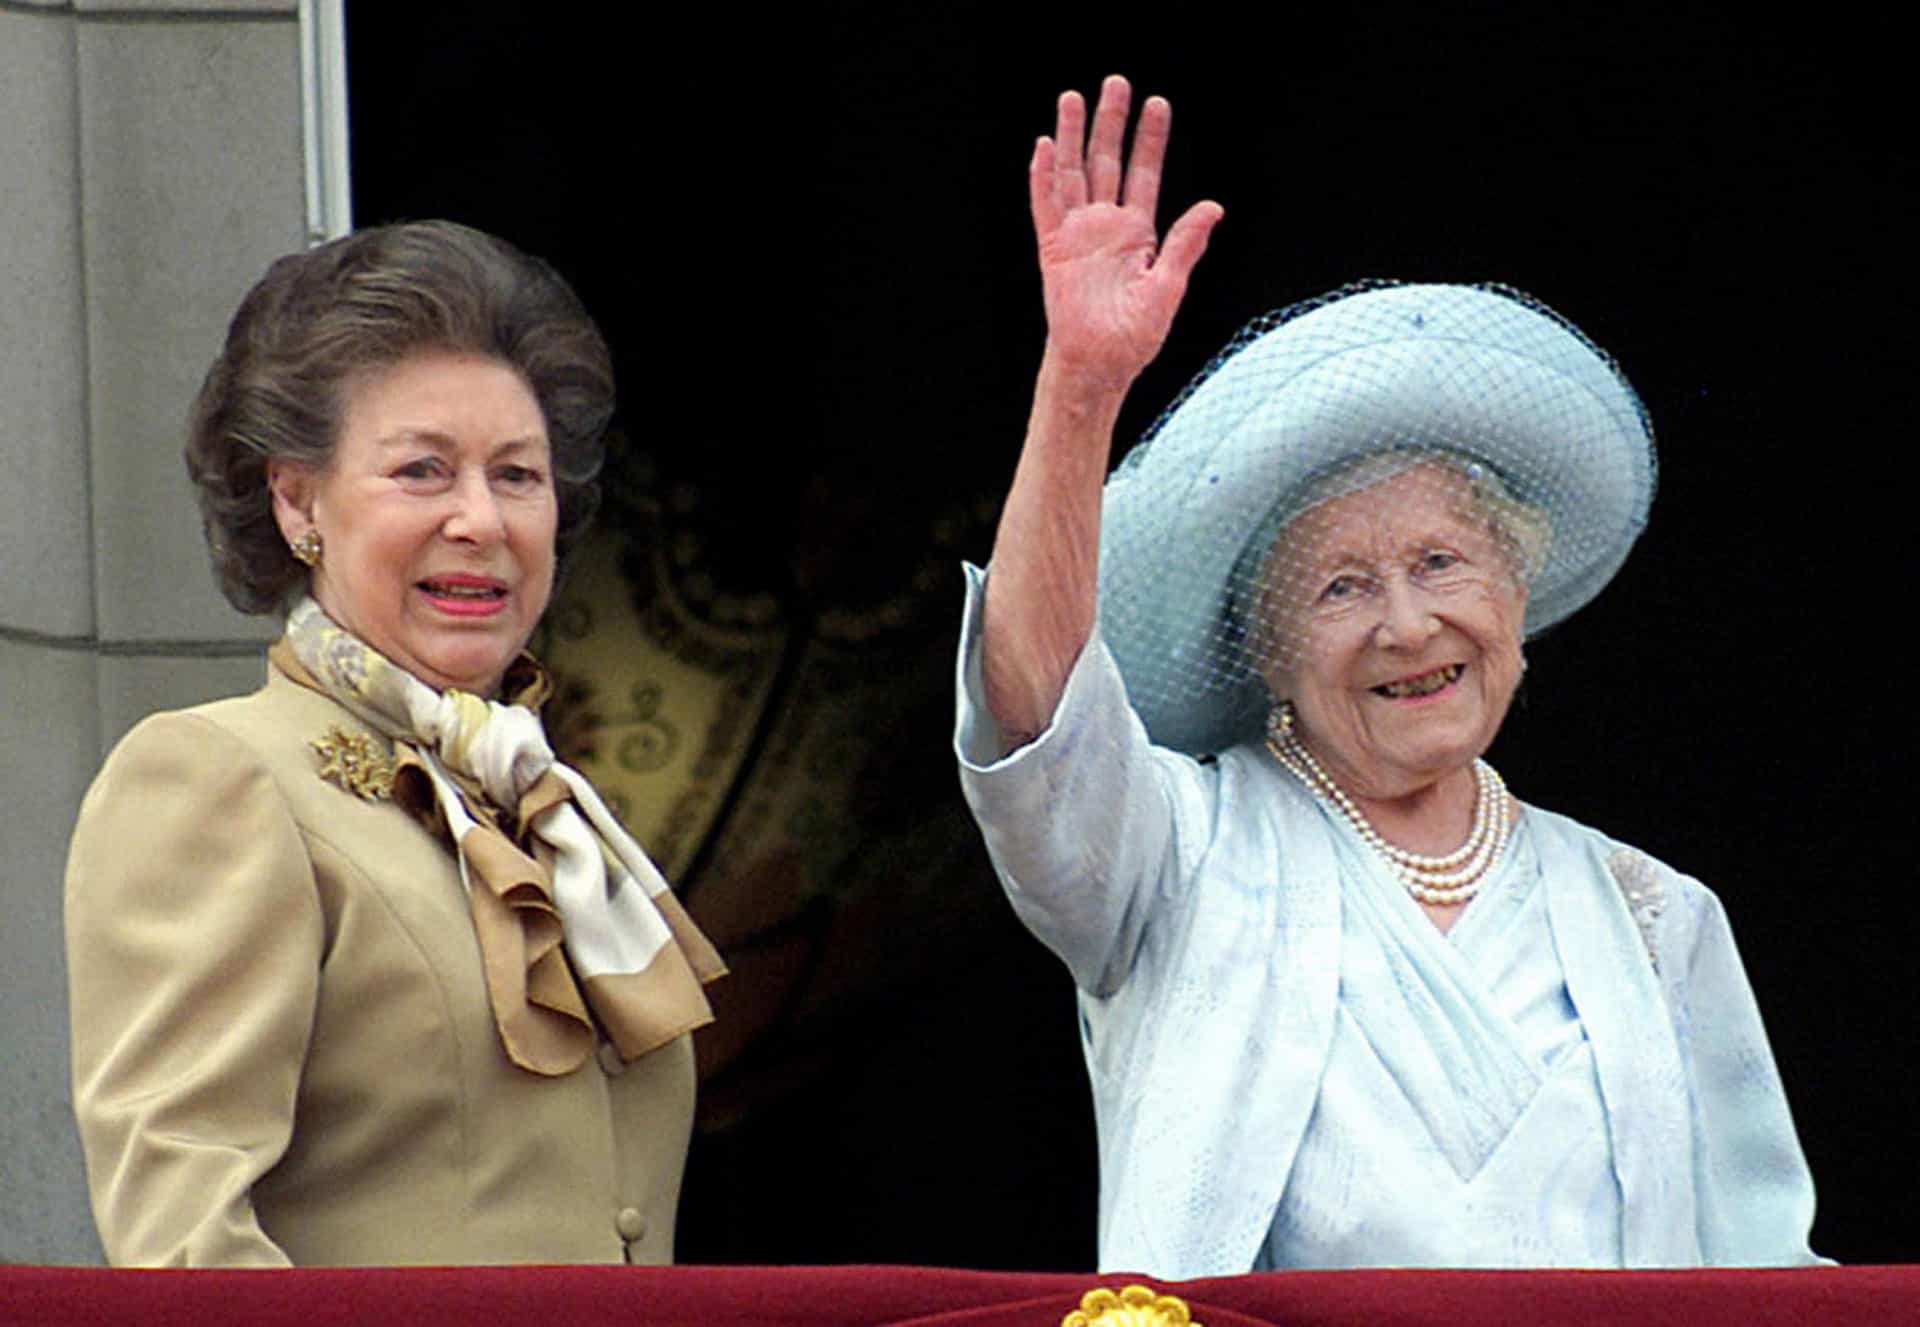 Nach einem dritten Schlaganfall im Jahr 2002 starb die Prinzessin im Alter von 71 Jahren. Etwa eineinhalb Monate später verstarb auch die Königinmutter im Alter von 101 Jahren. Die Königin war am Boden zerstört.